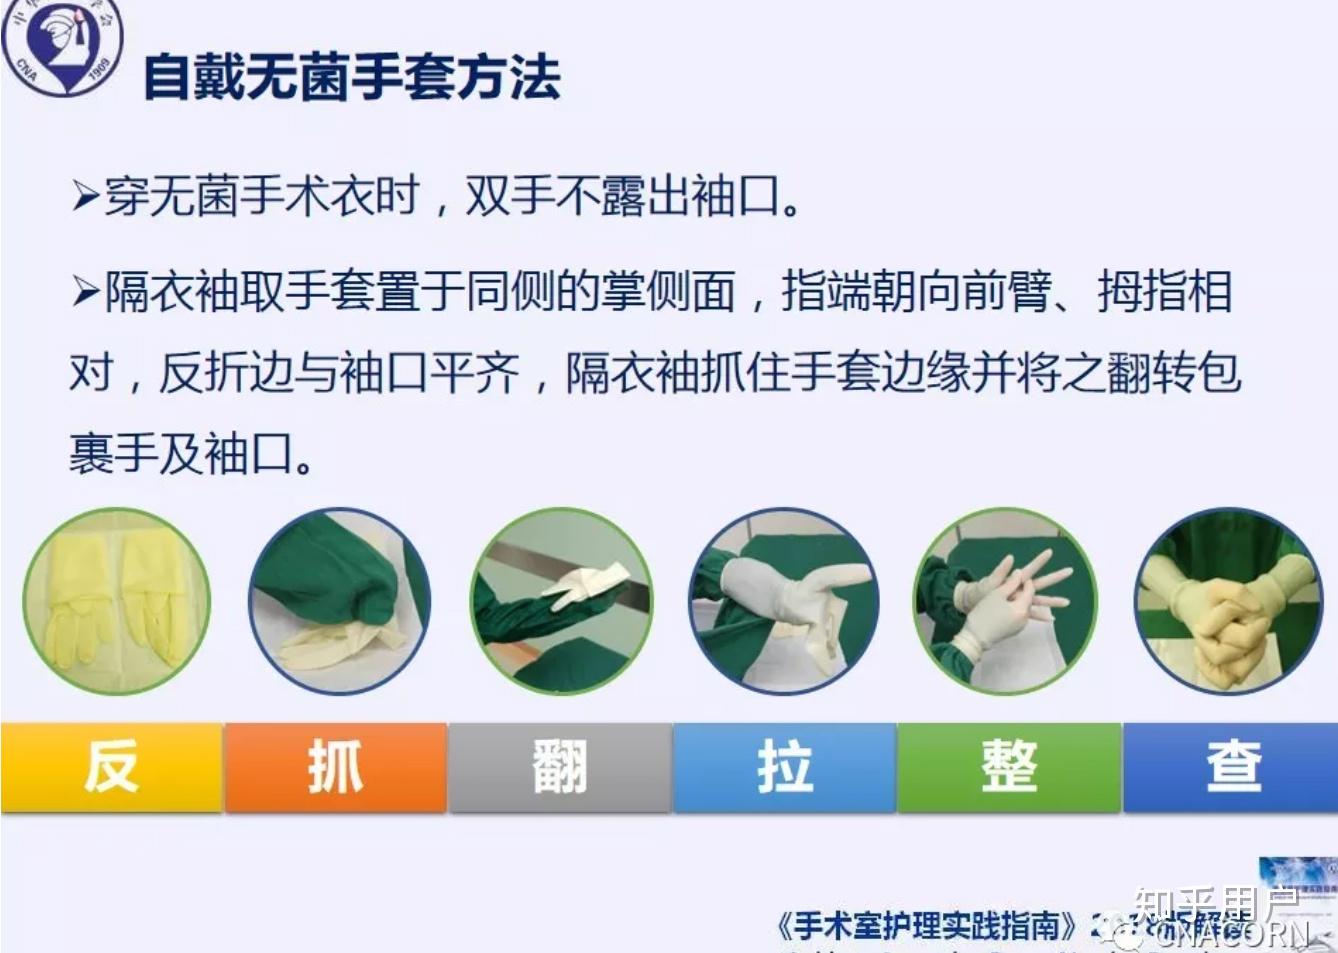 无接触式戴手套在医院手术室的应用多吗